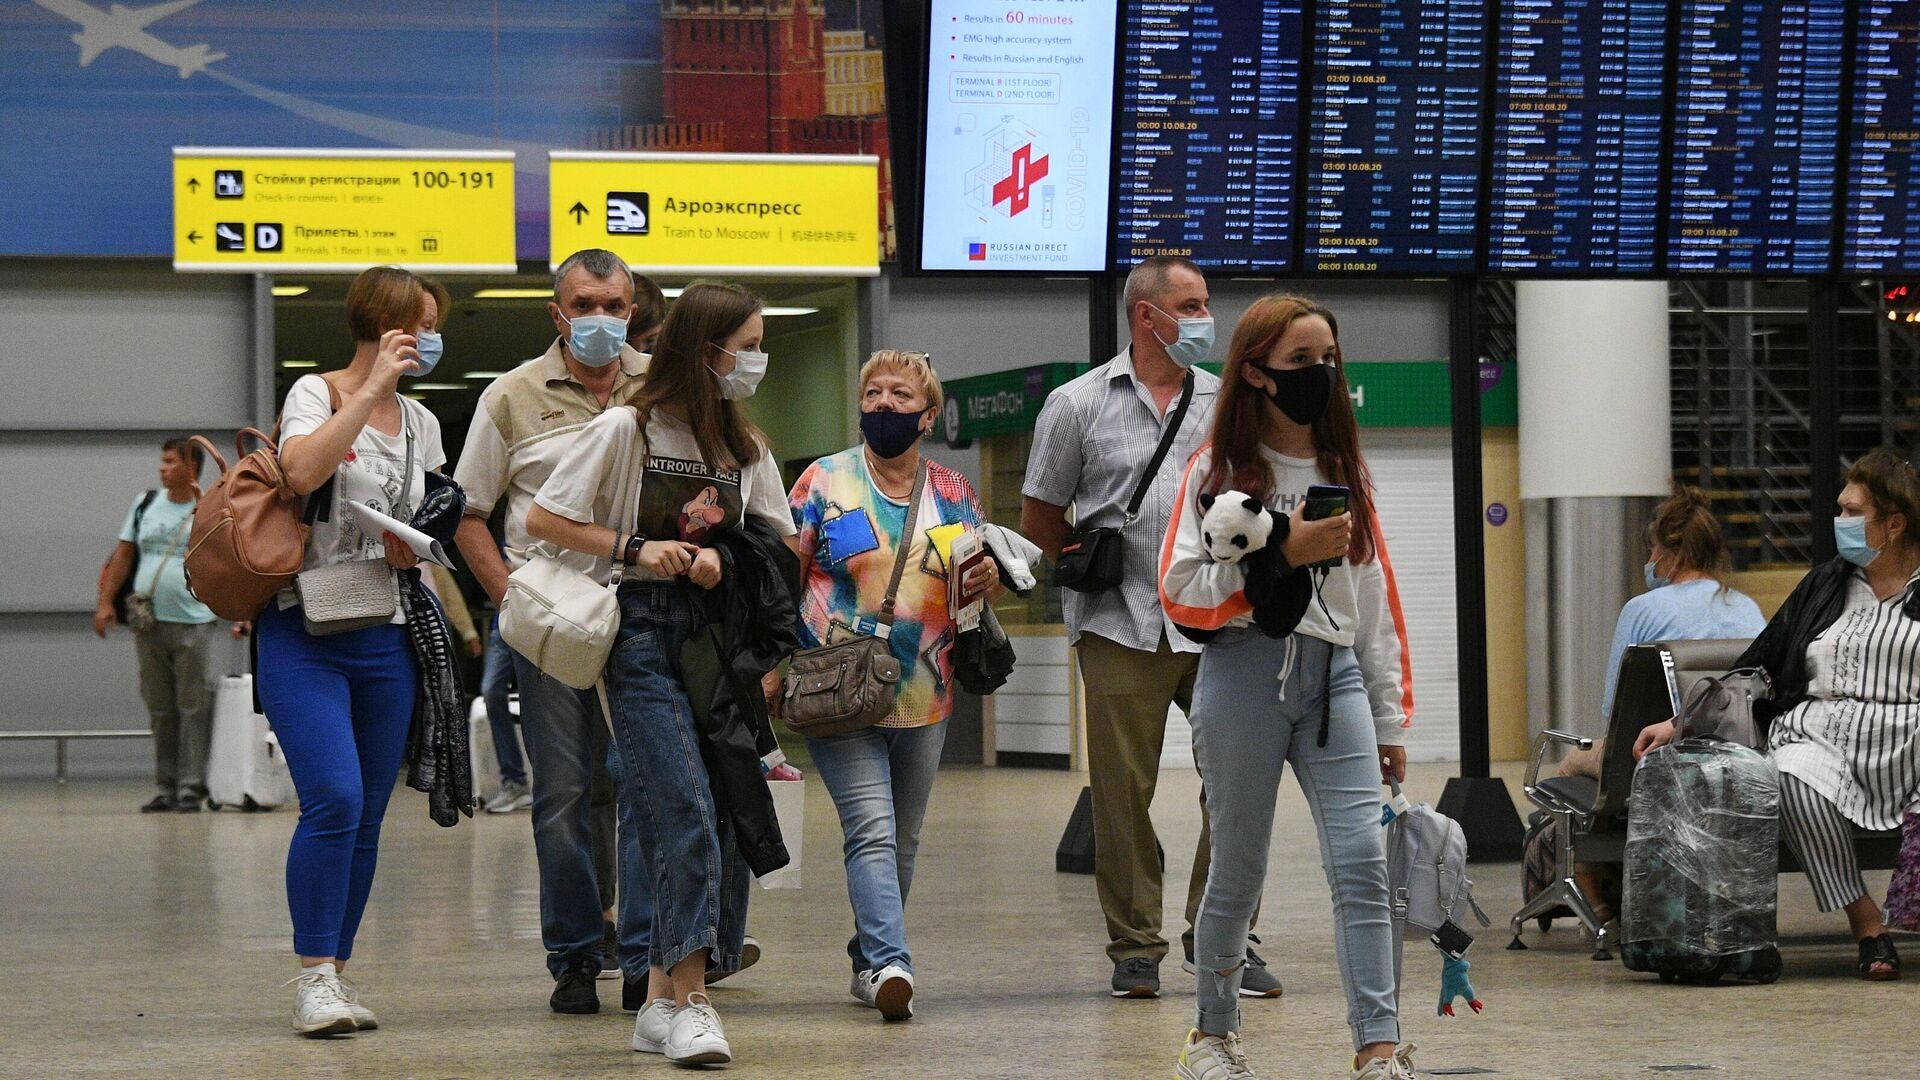 Последние новости сайта риа новости. Российские туристы в Европе. Туристы в аэропорту. Аэропорт. Российские граждане в аэропорту за границей.